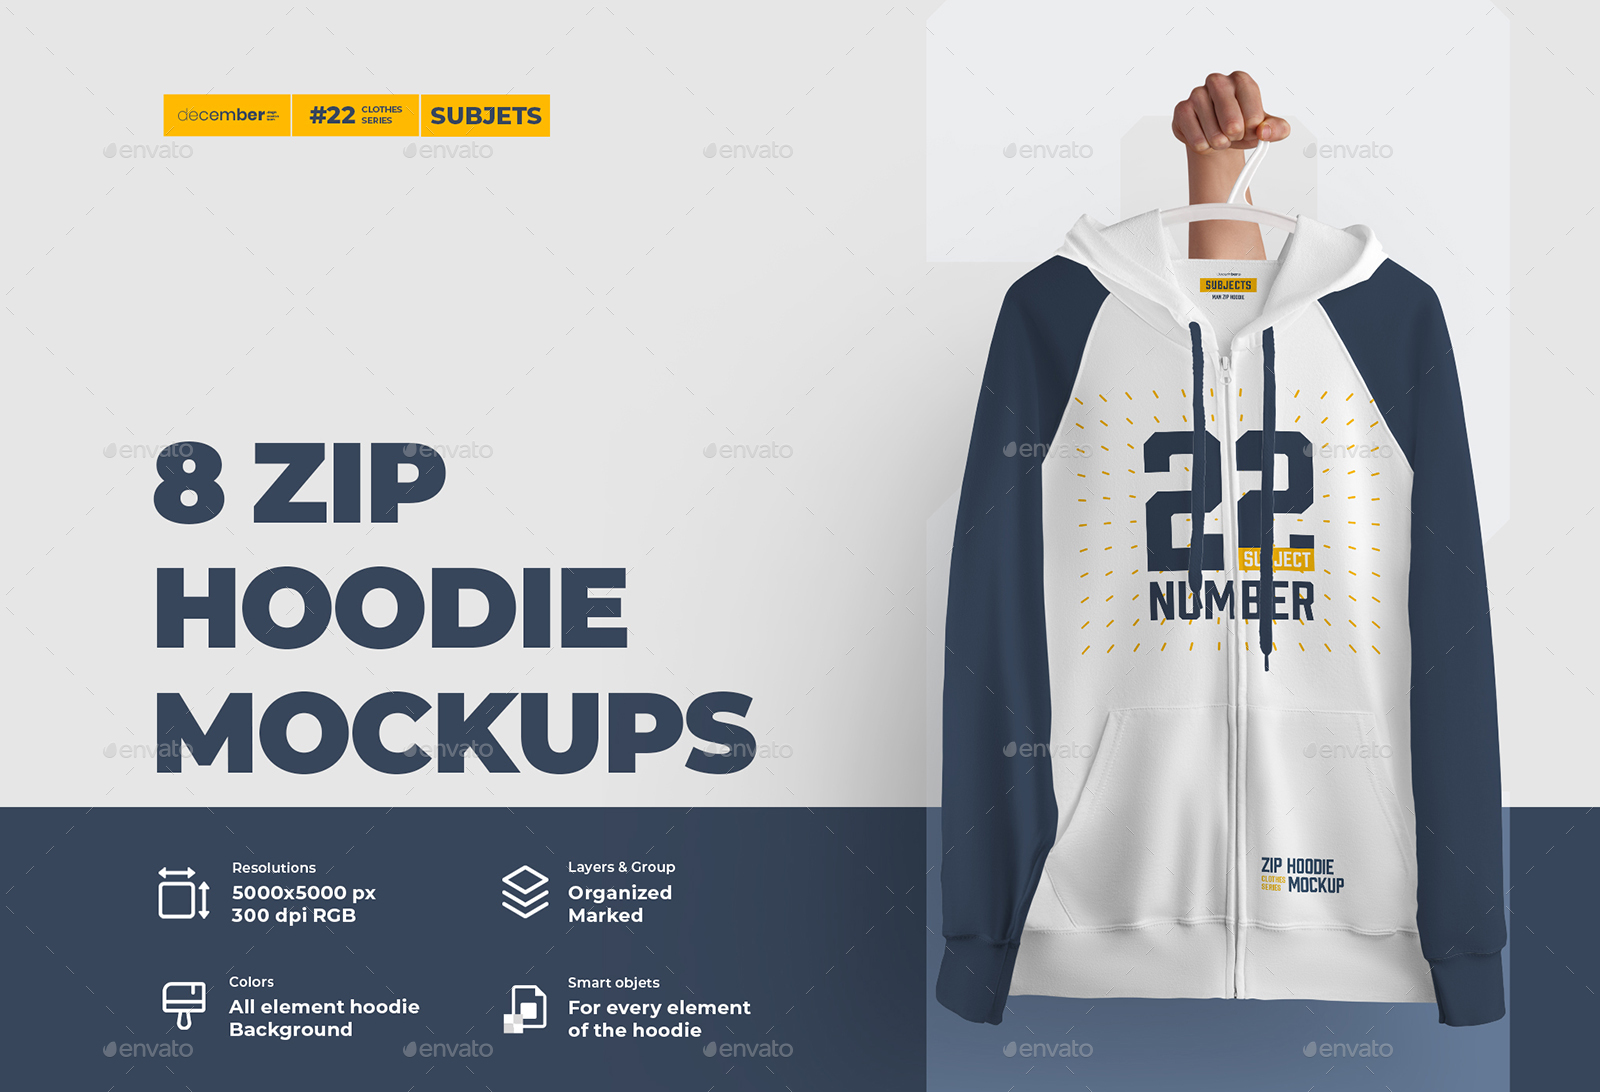 8 Zip Hoodie Mockups (Subject), Graphics | GraphicRiver